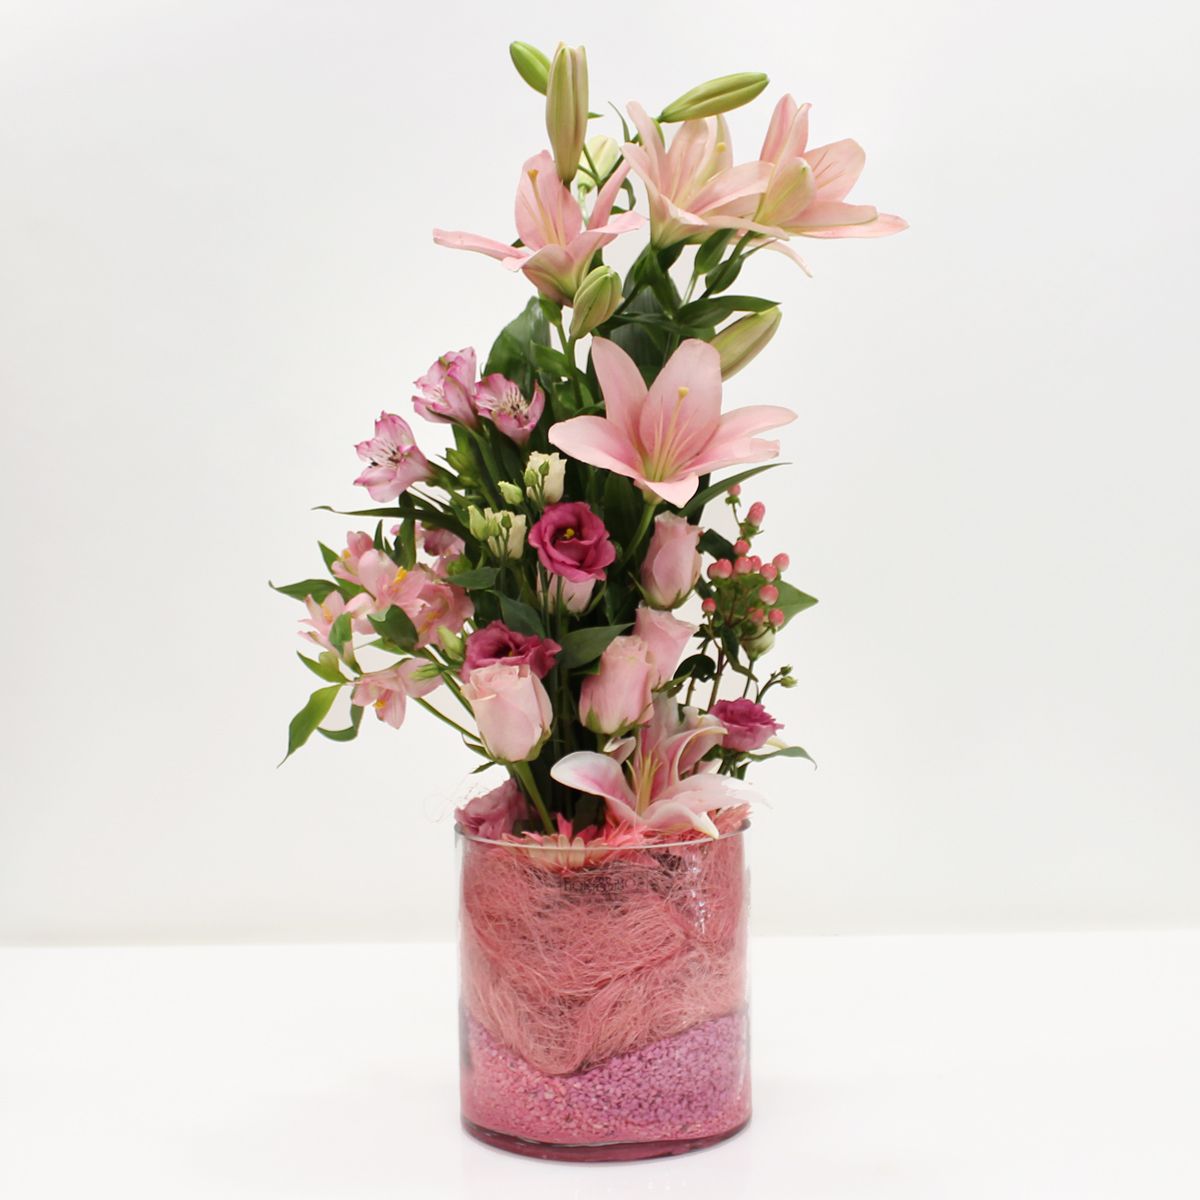 Σύνθεση σε βάζο με ροζ λουλούδια